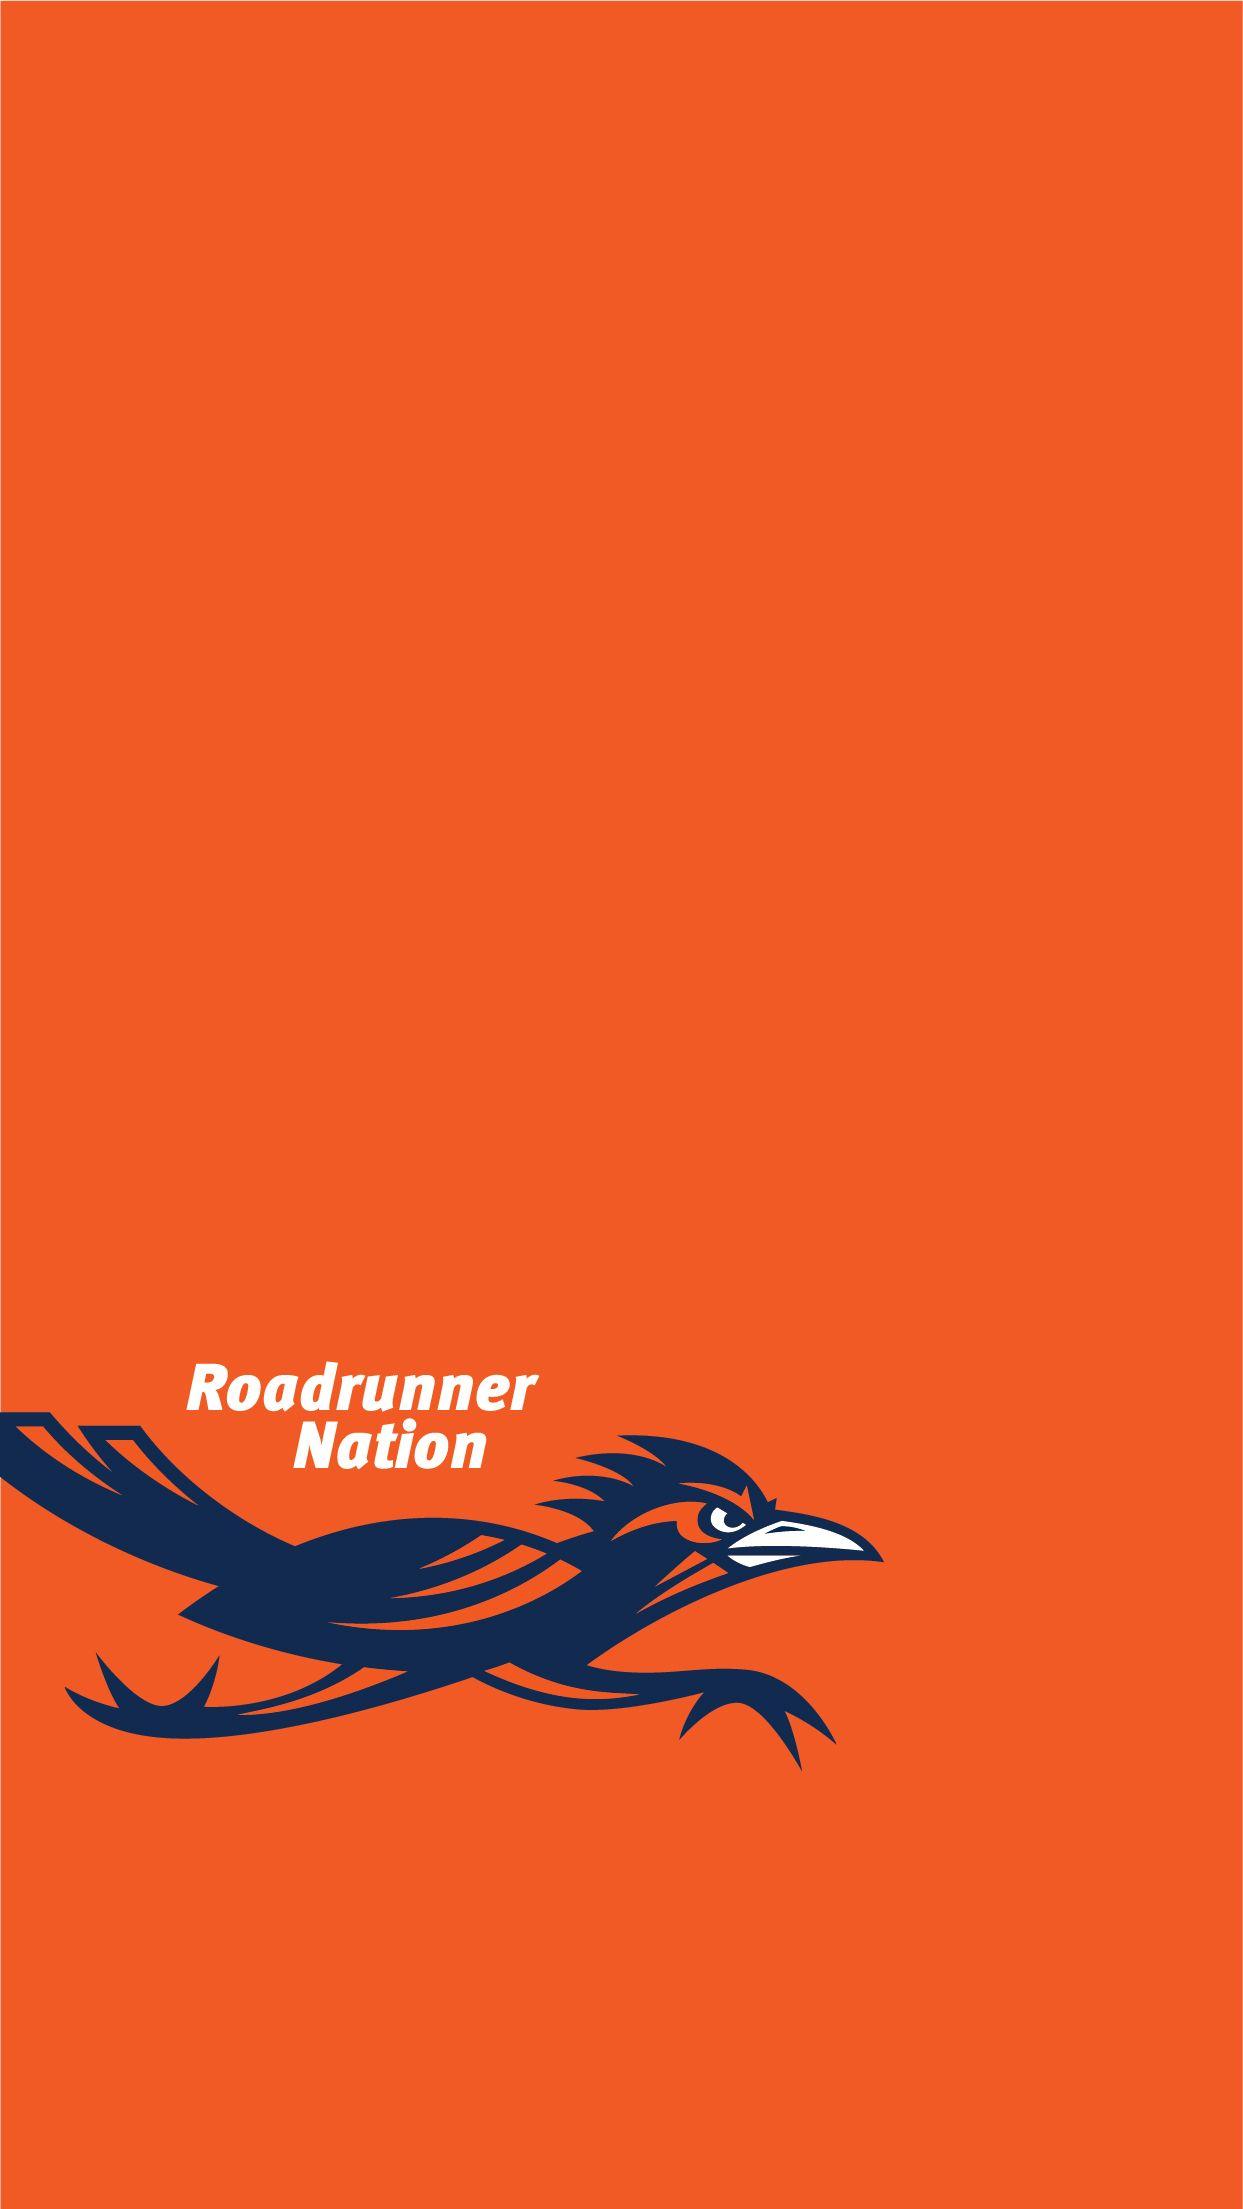 Roadrunner Nation